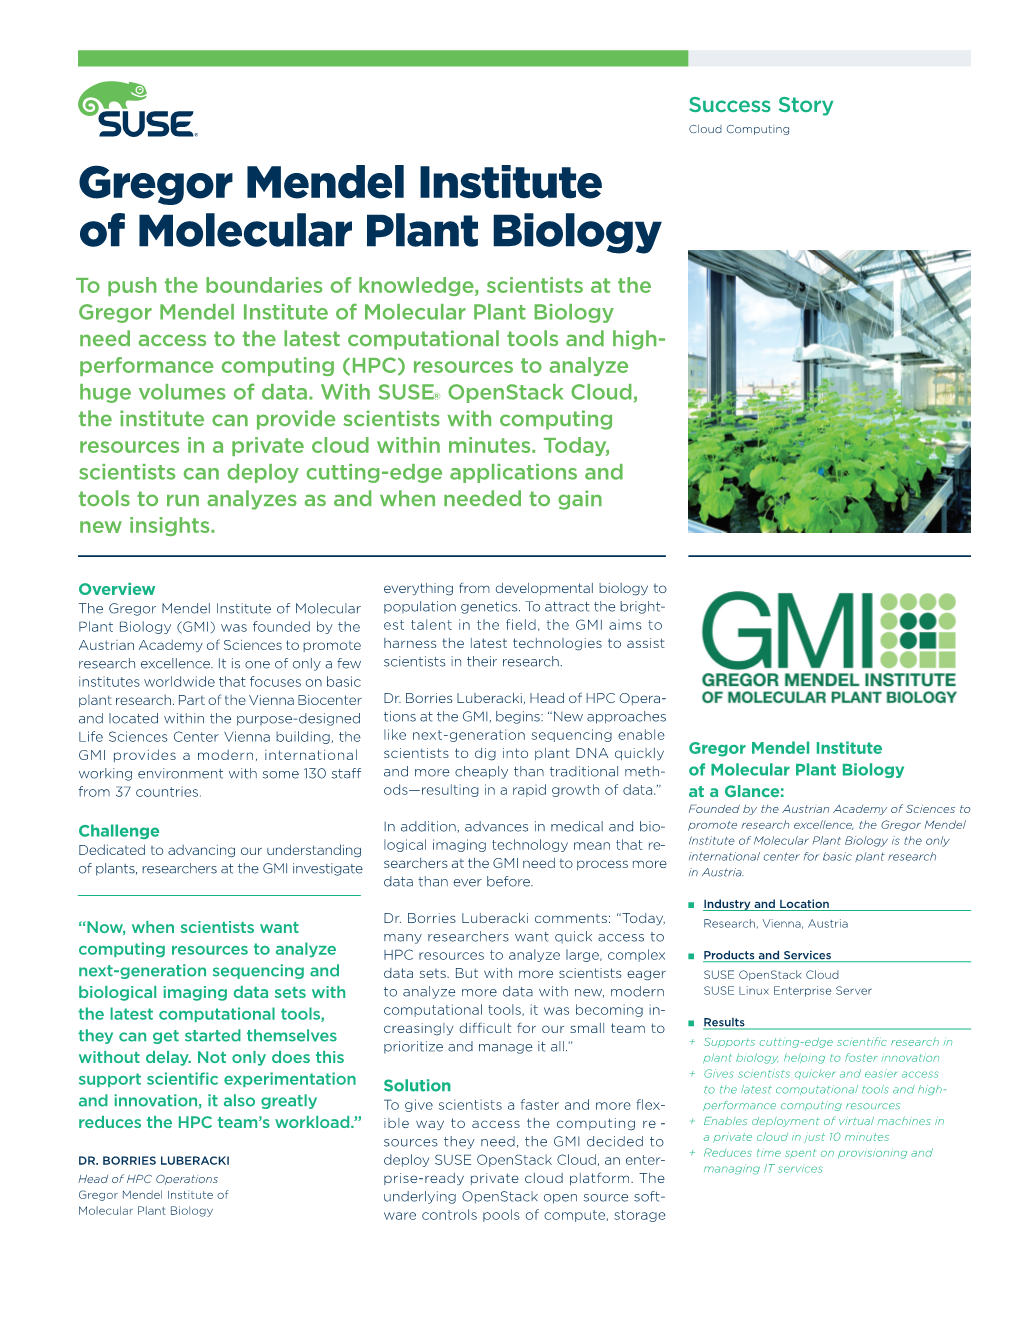 Gregor Mendel Institute of Molecular Plant Biology